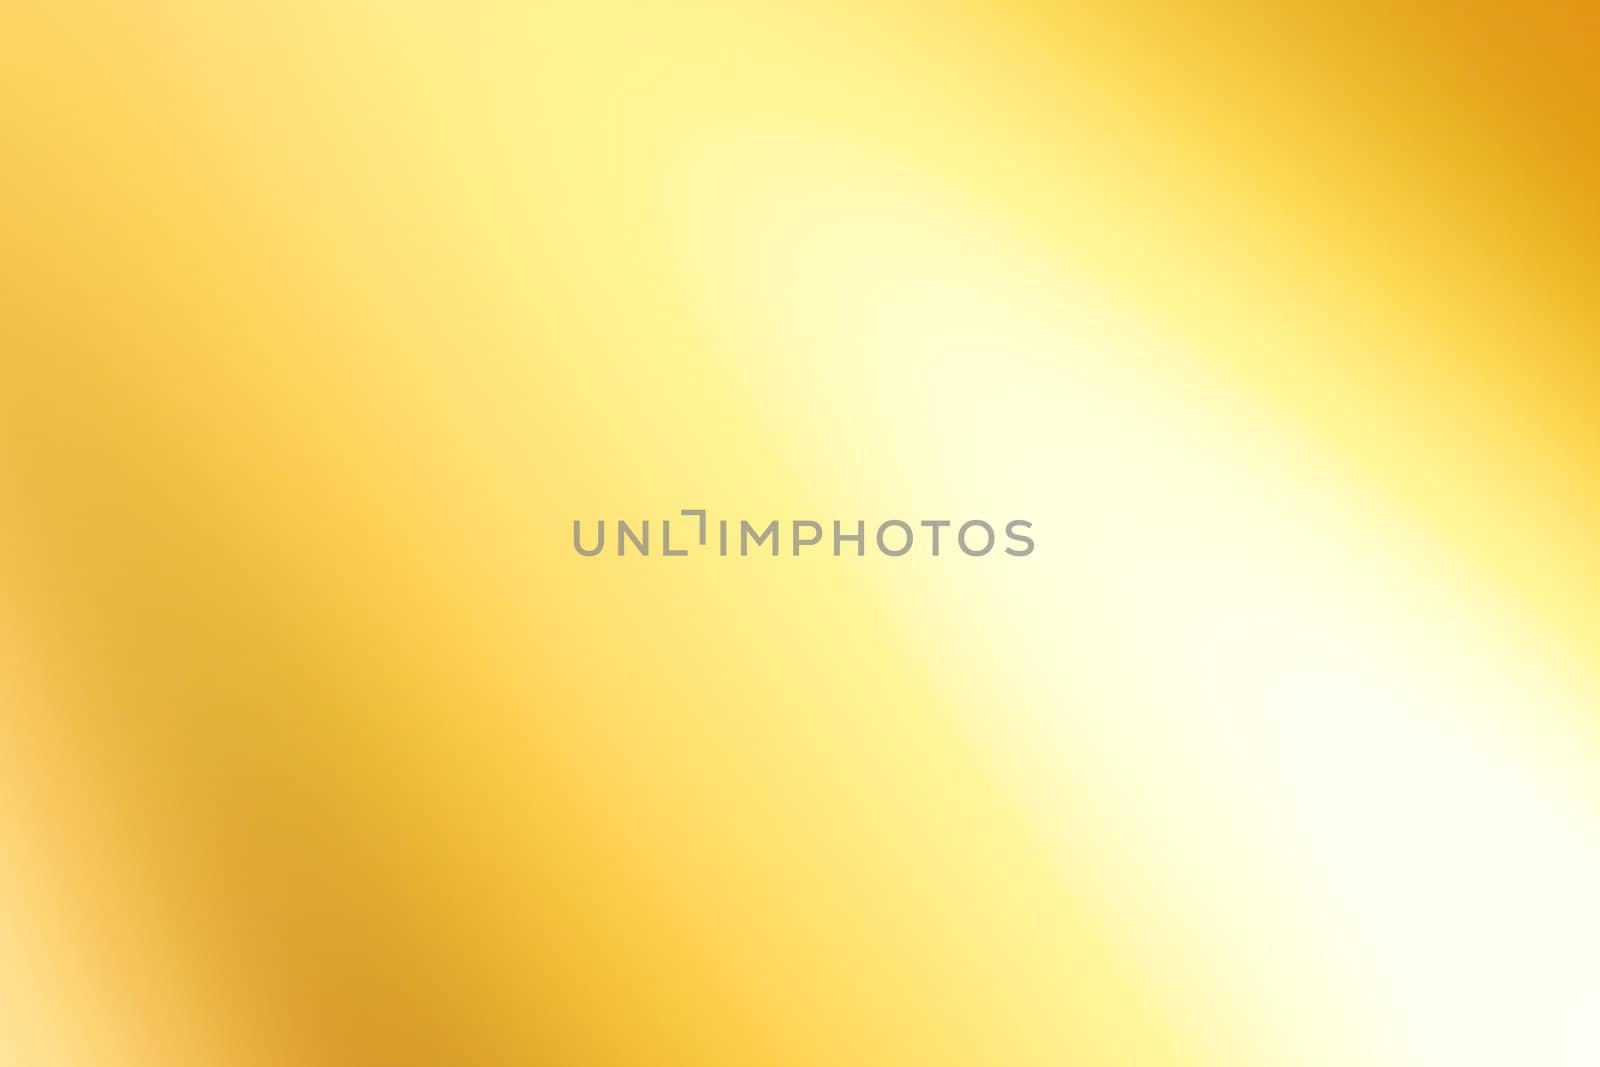 Gold shiny background  by jarenwicklund